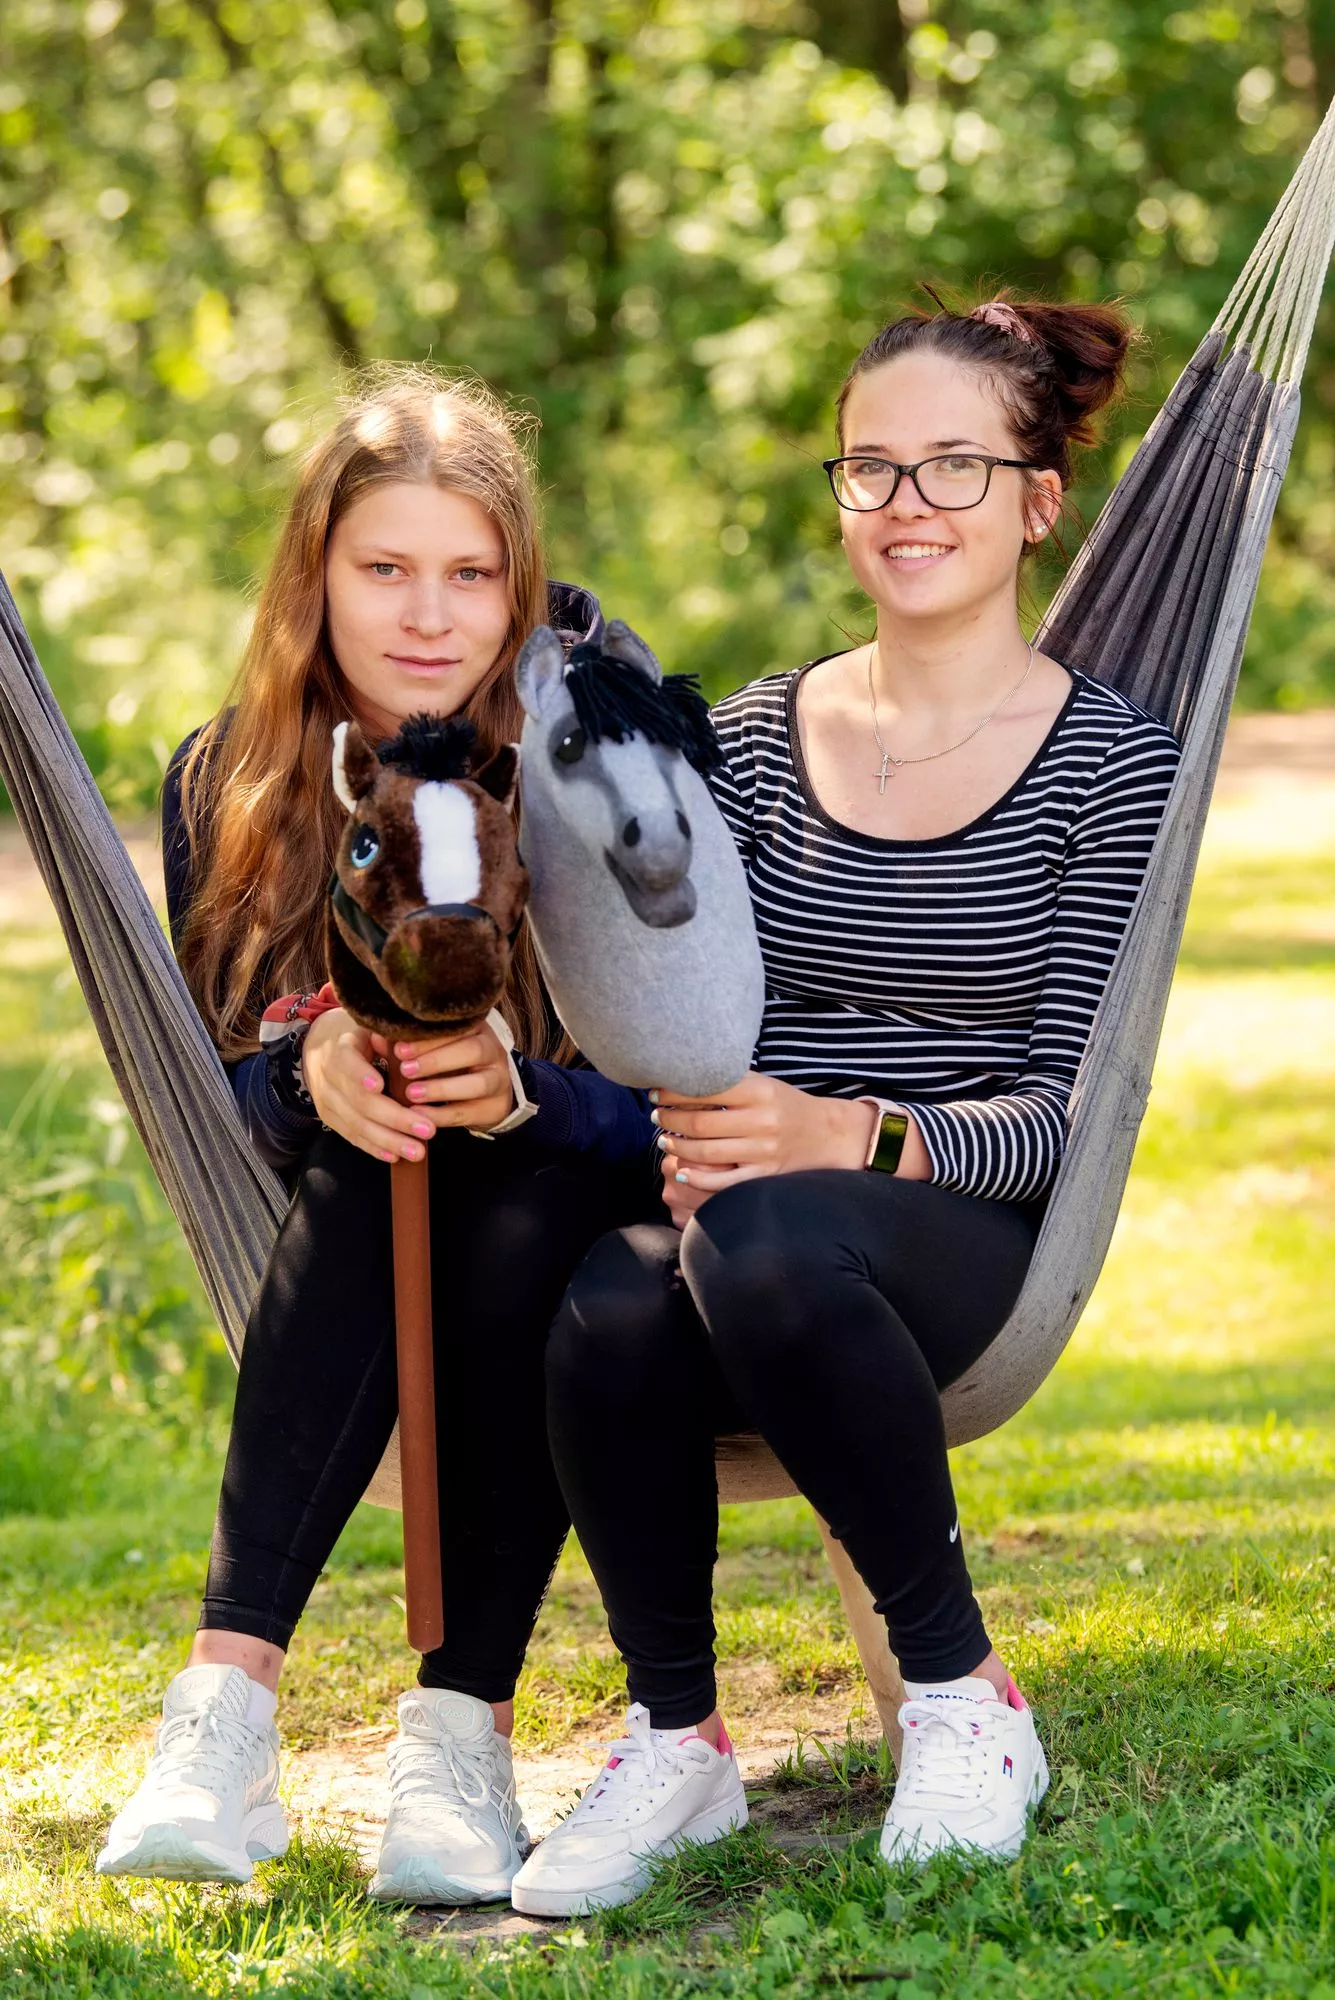 Nuoret yrittäjät Noora Pöyry ja Anna Tikka